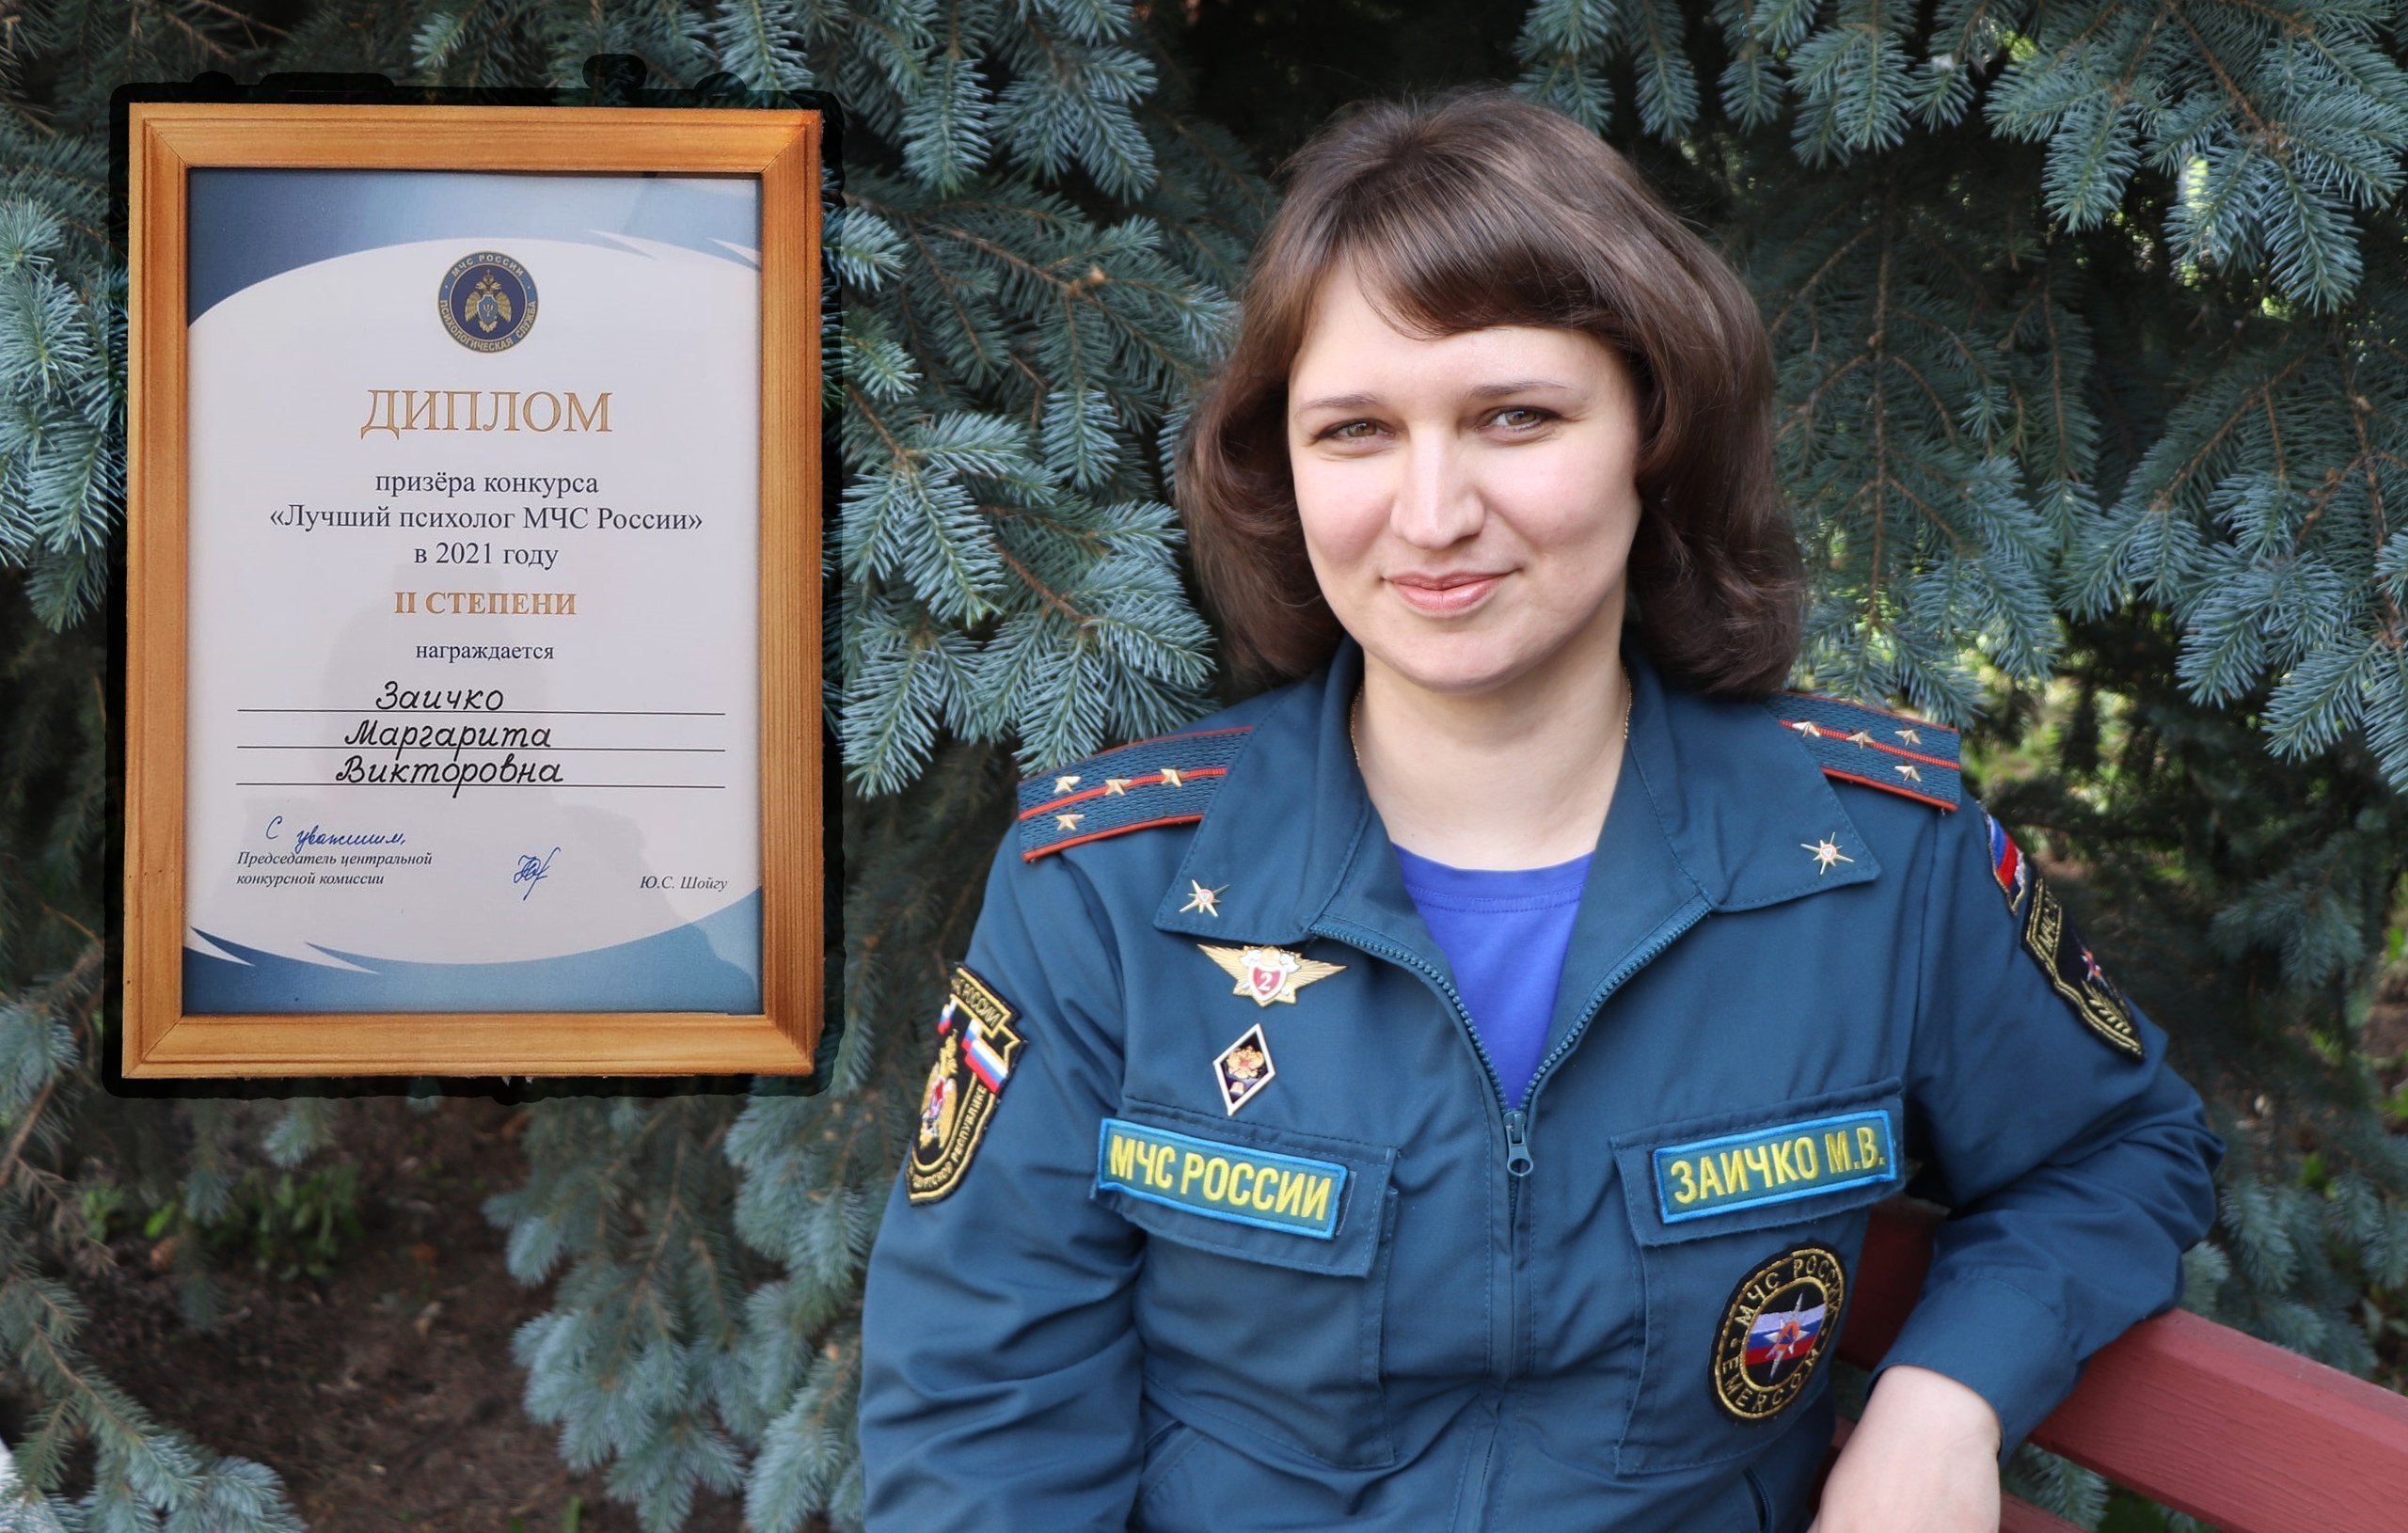 

Психолог МЧС Удмуртии заняла второе место во Всероссийском конкурсе

